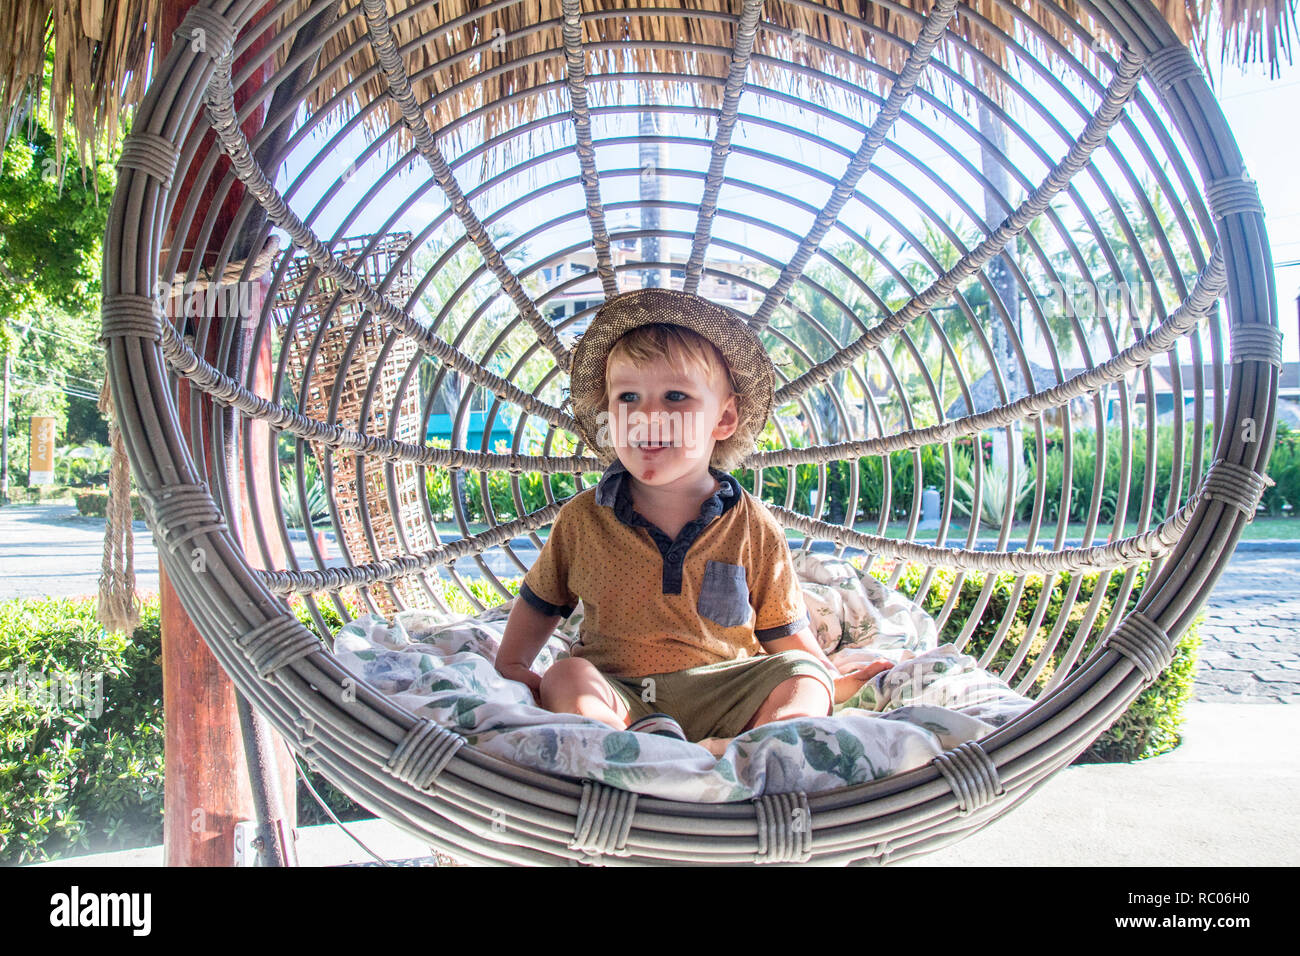 Un portrait d'un jeune garçon avec un chapeau heureusement assis dans un joli jardin balançoire Banque D'Images